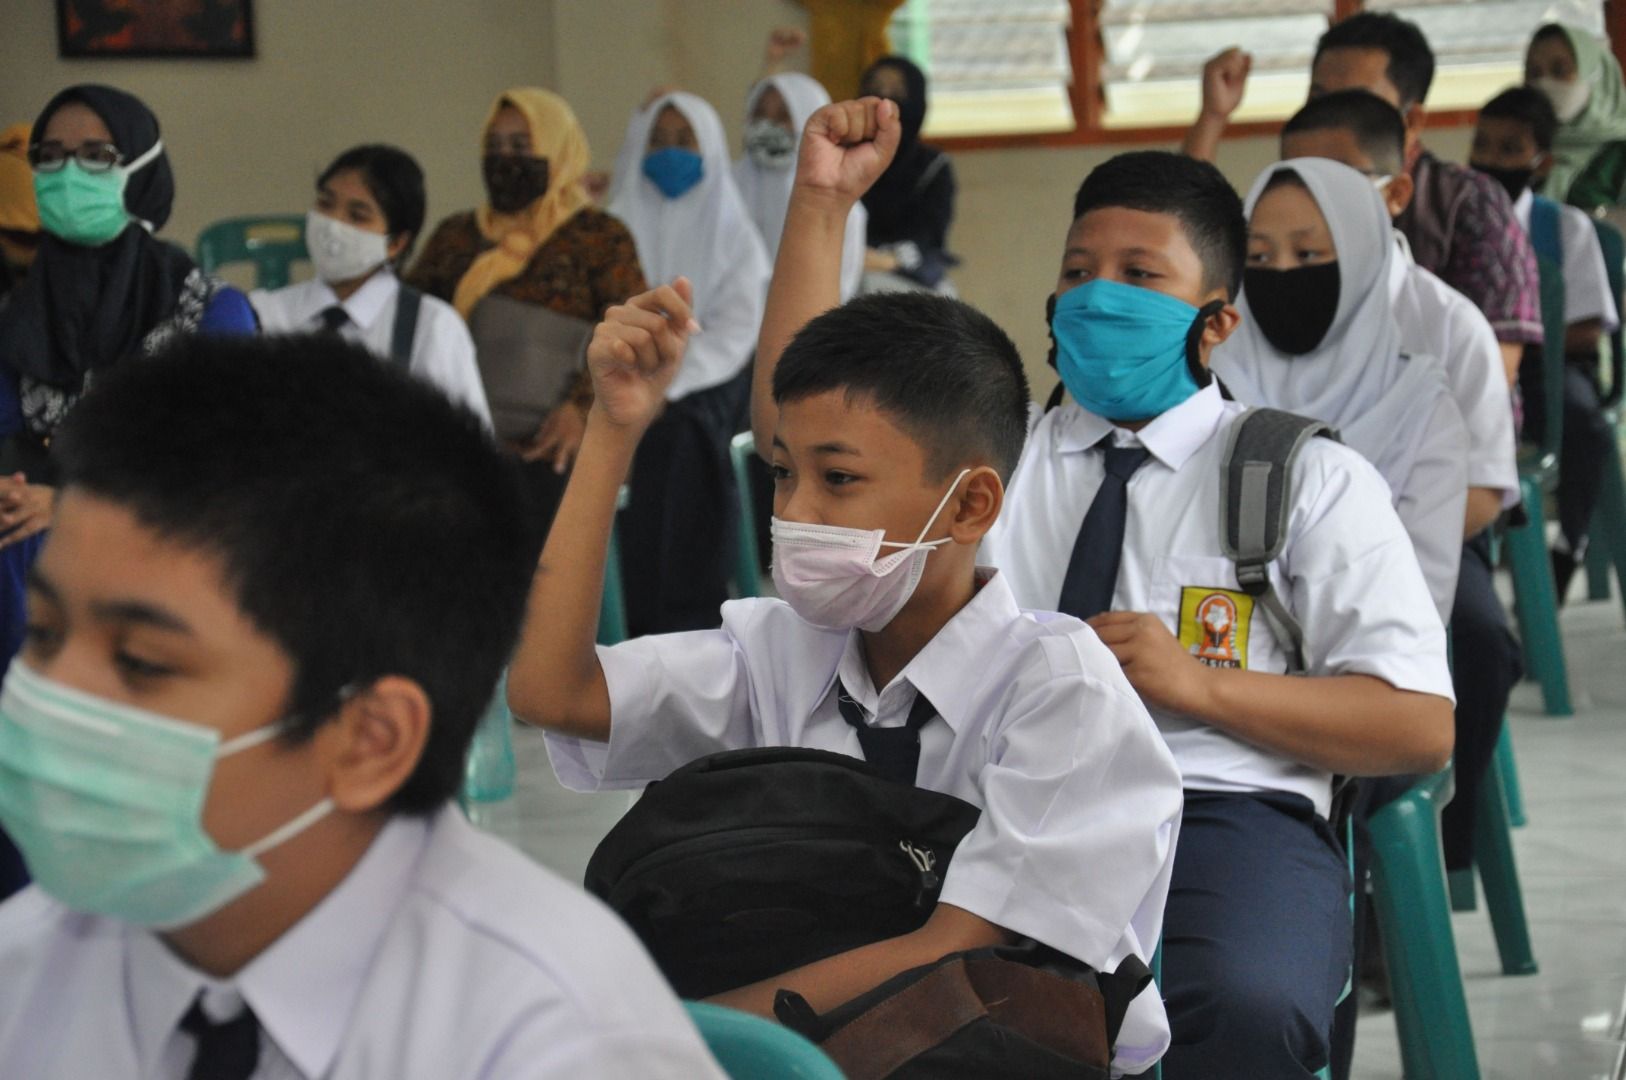 FAGI Jawa Barat Atas Usul KPAI Agar Pembelajaran Tatap Muka di Sekolah Digelar Setelah Dilakukan Vaksinasi Covid-19